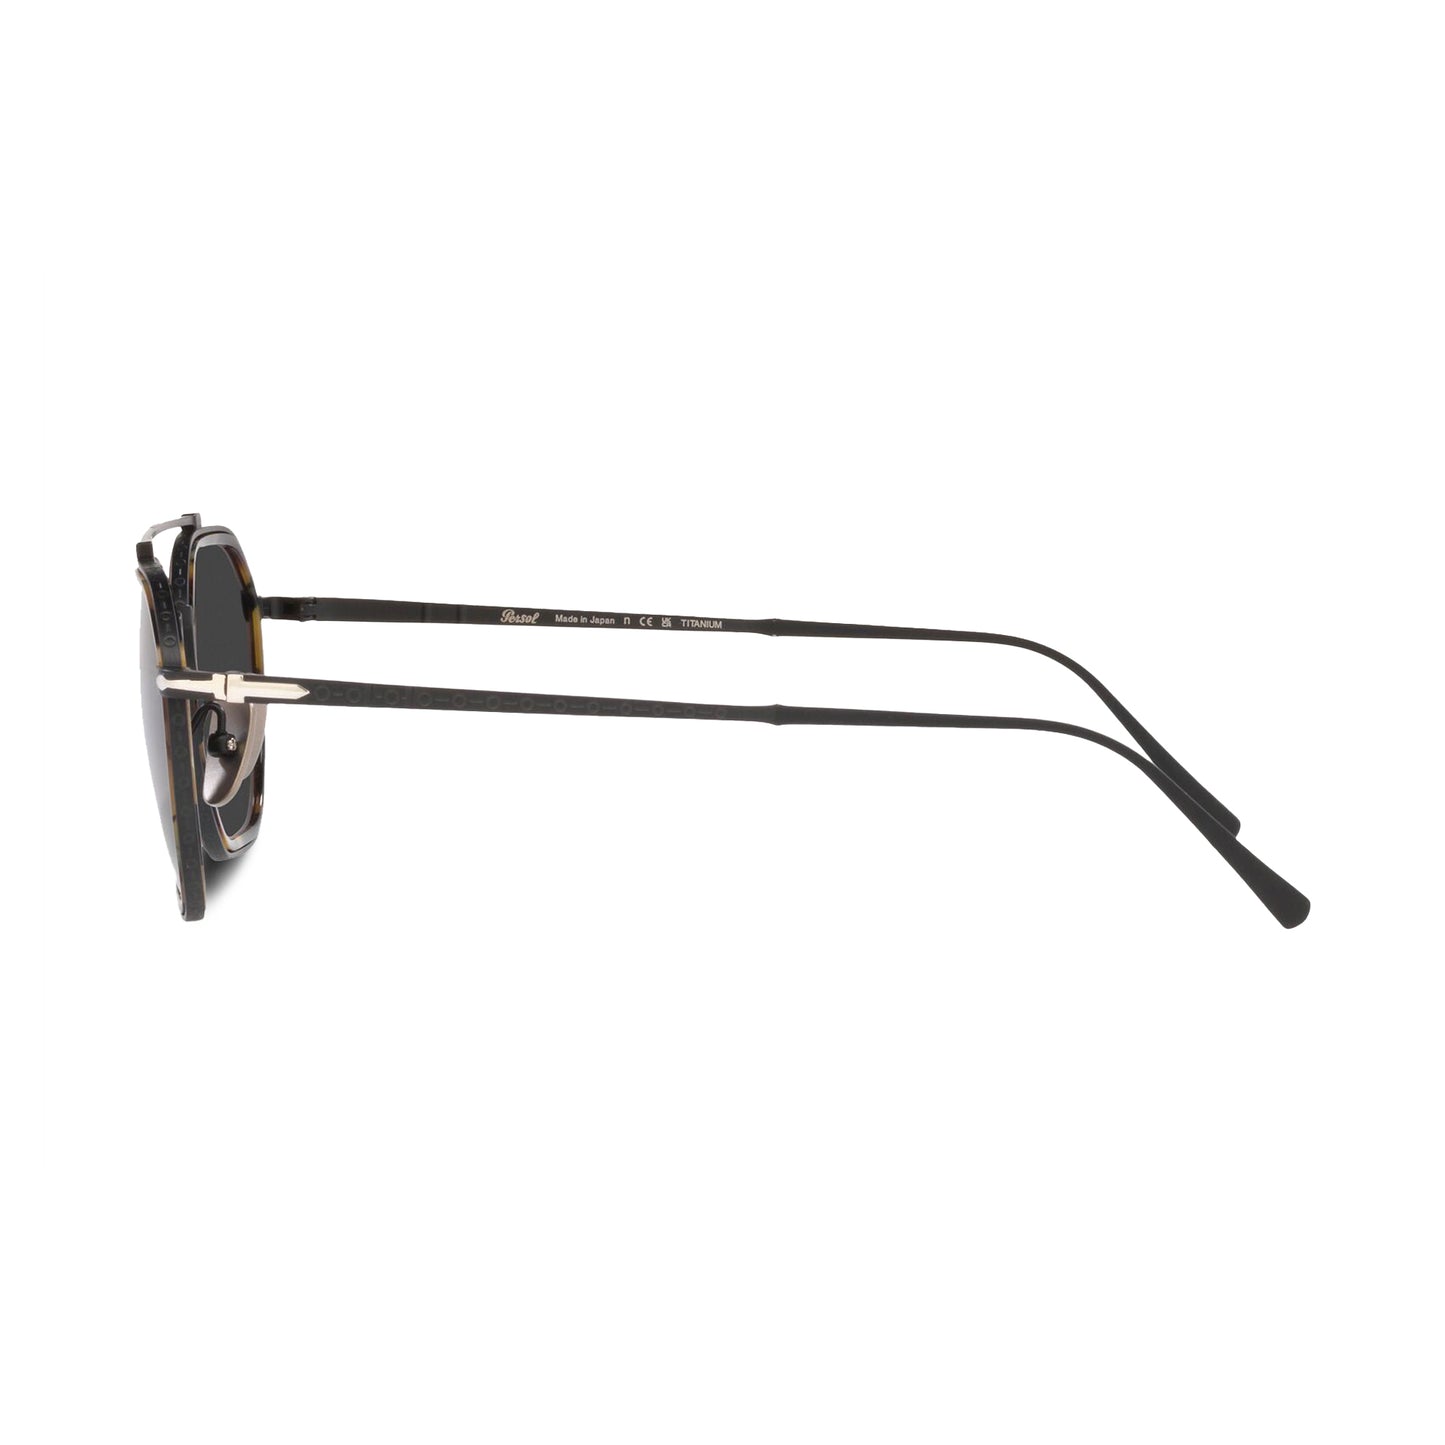 Persol Japan-Made Titanium Sunglasses